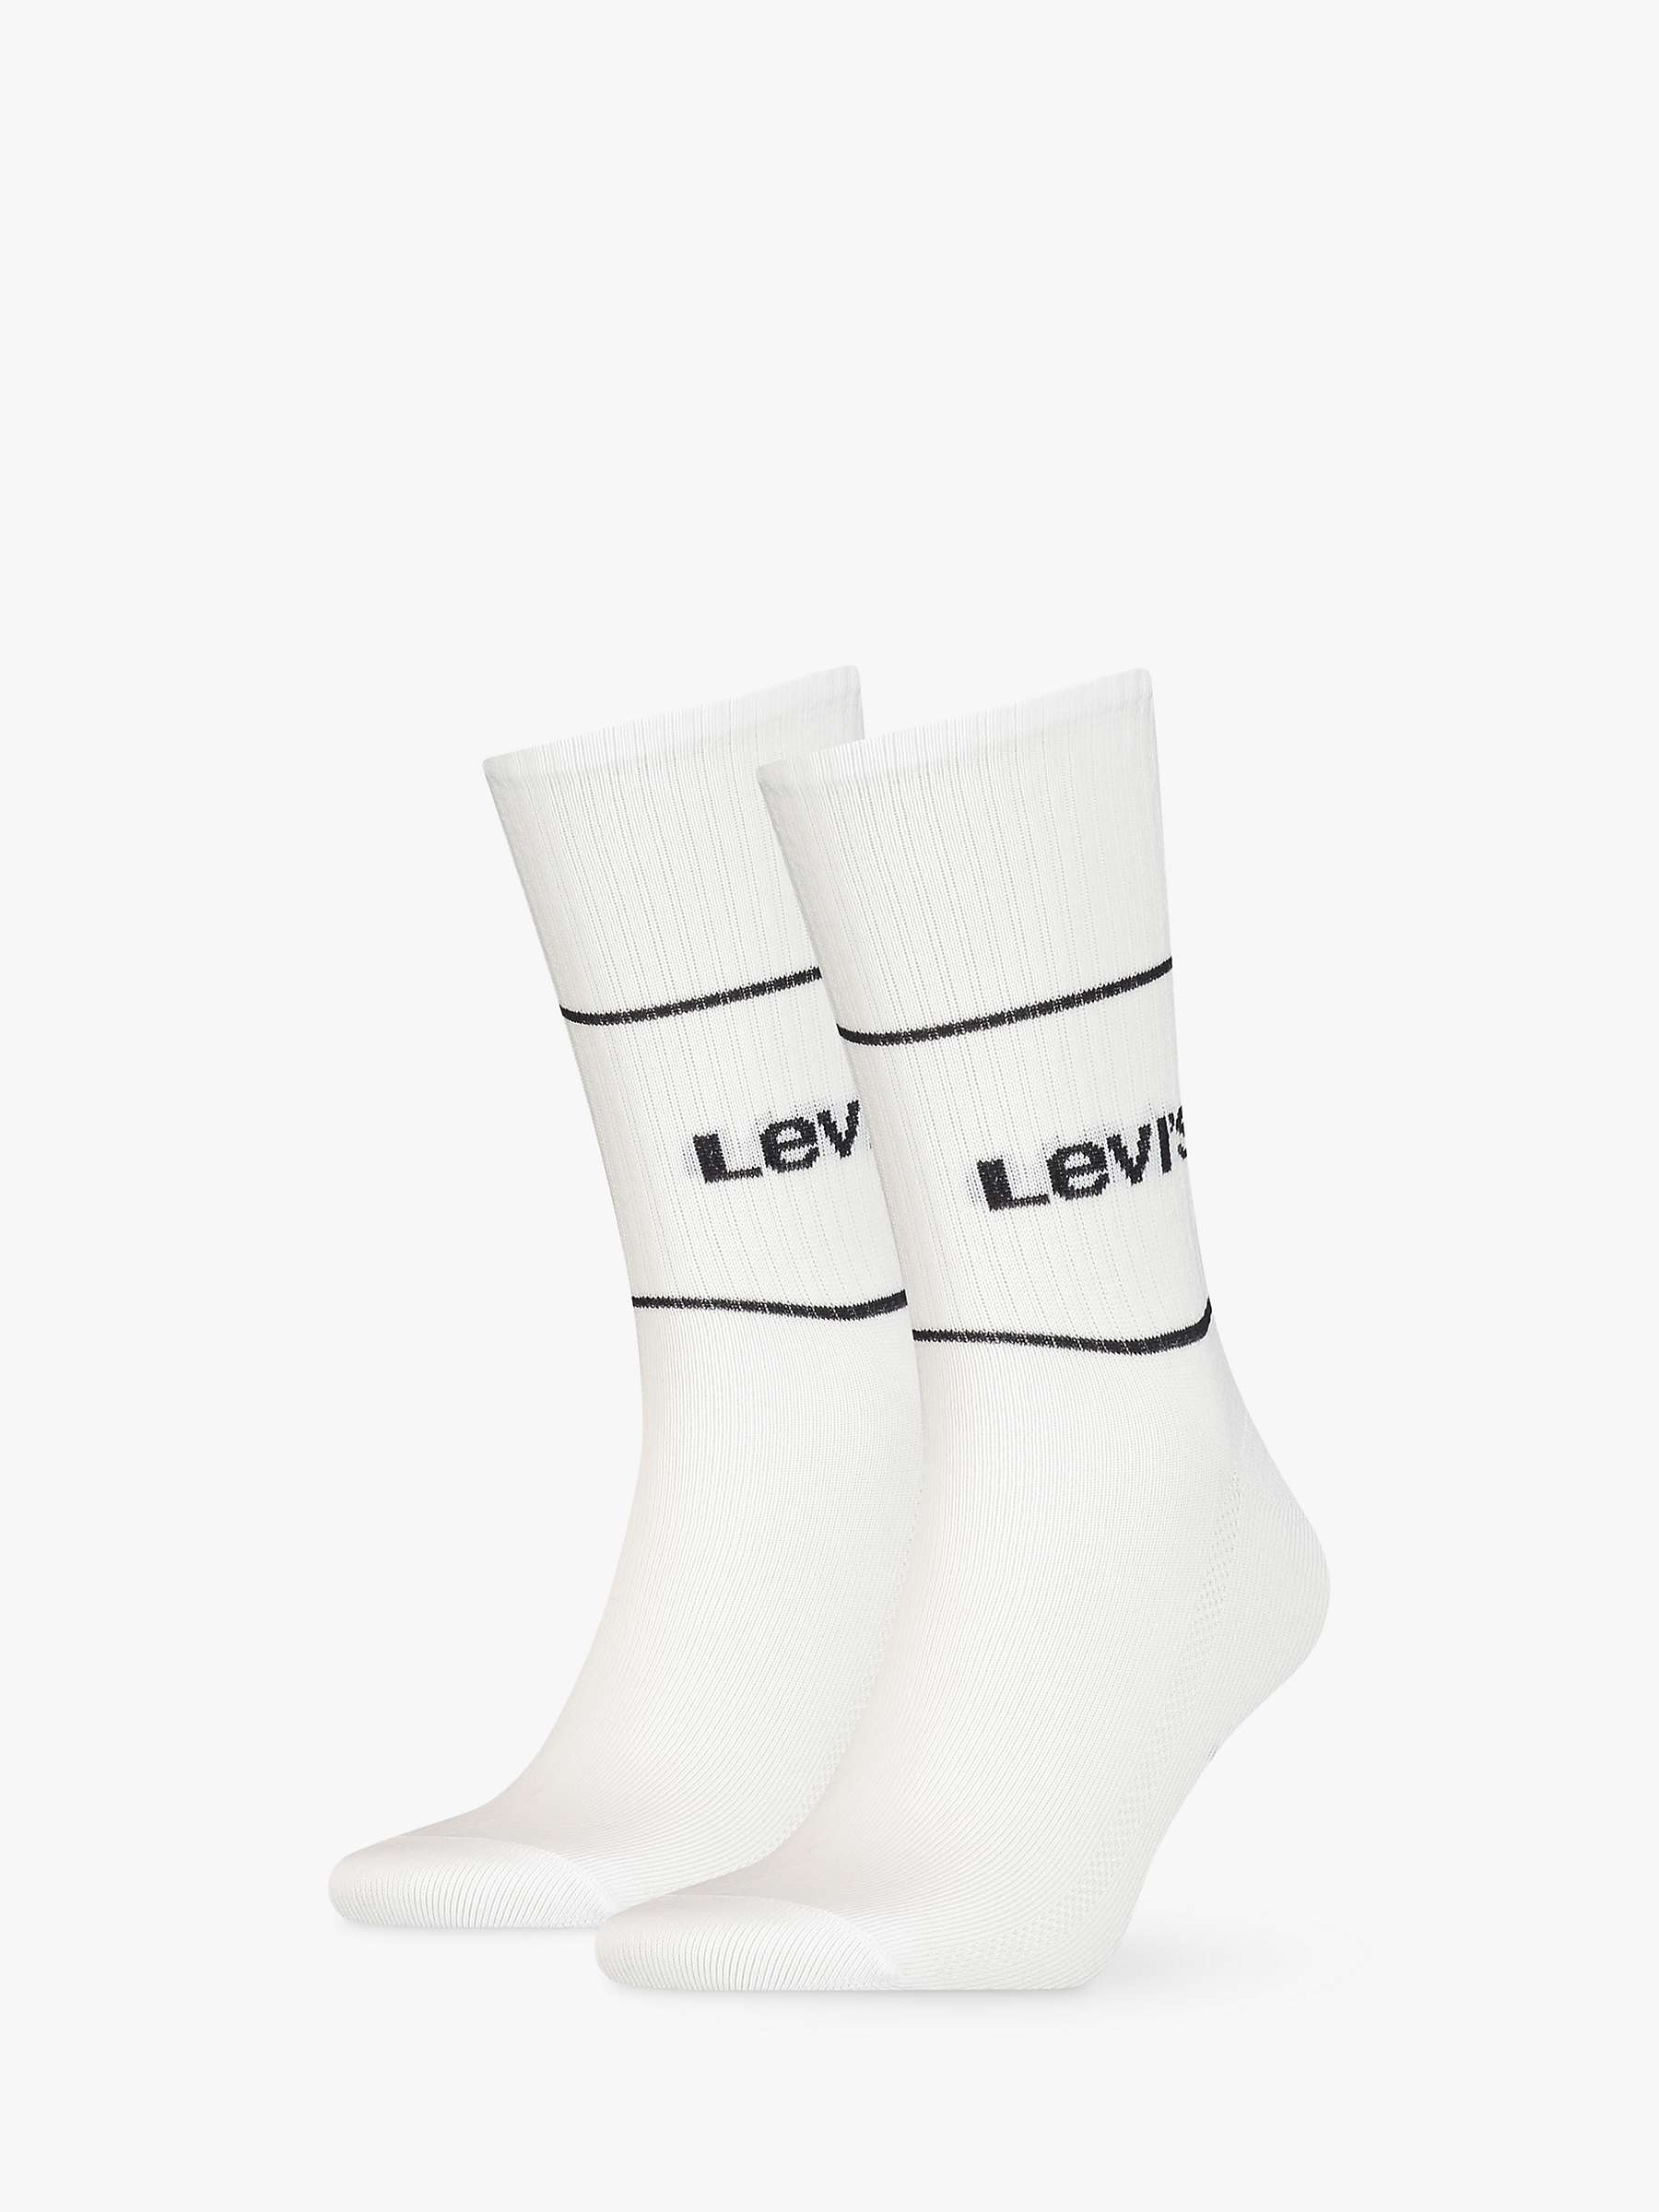 Levi's Regular Cut Logo Socks, Pack of 2, White at John Lewis & Partners